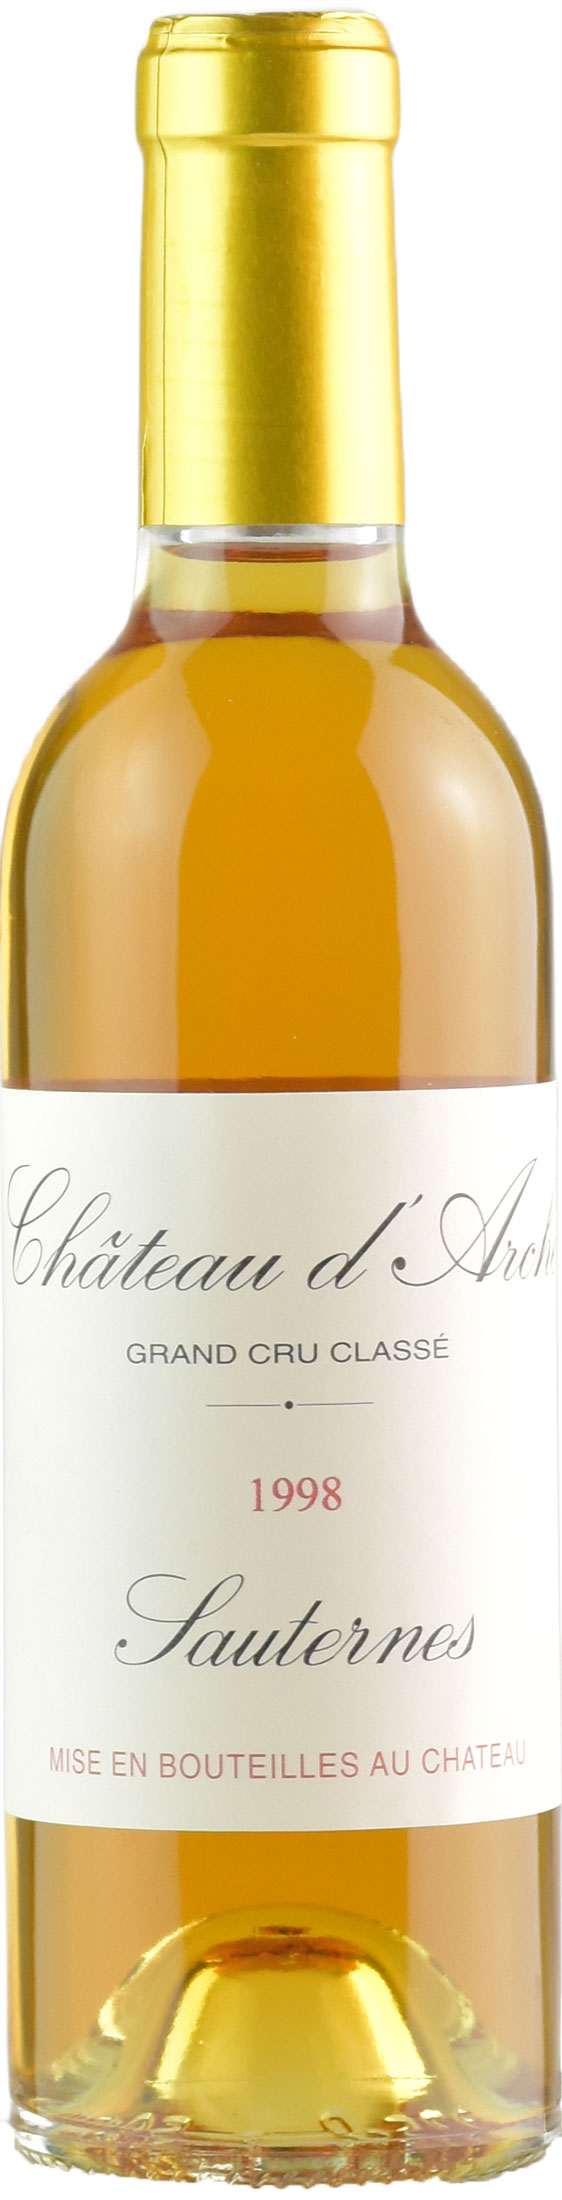 Chateau d%27Arche Grand Cru Classé de Sauternes 0,375L 1998